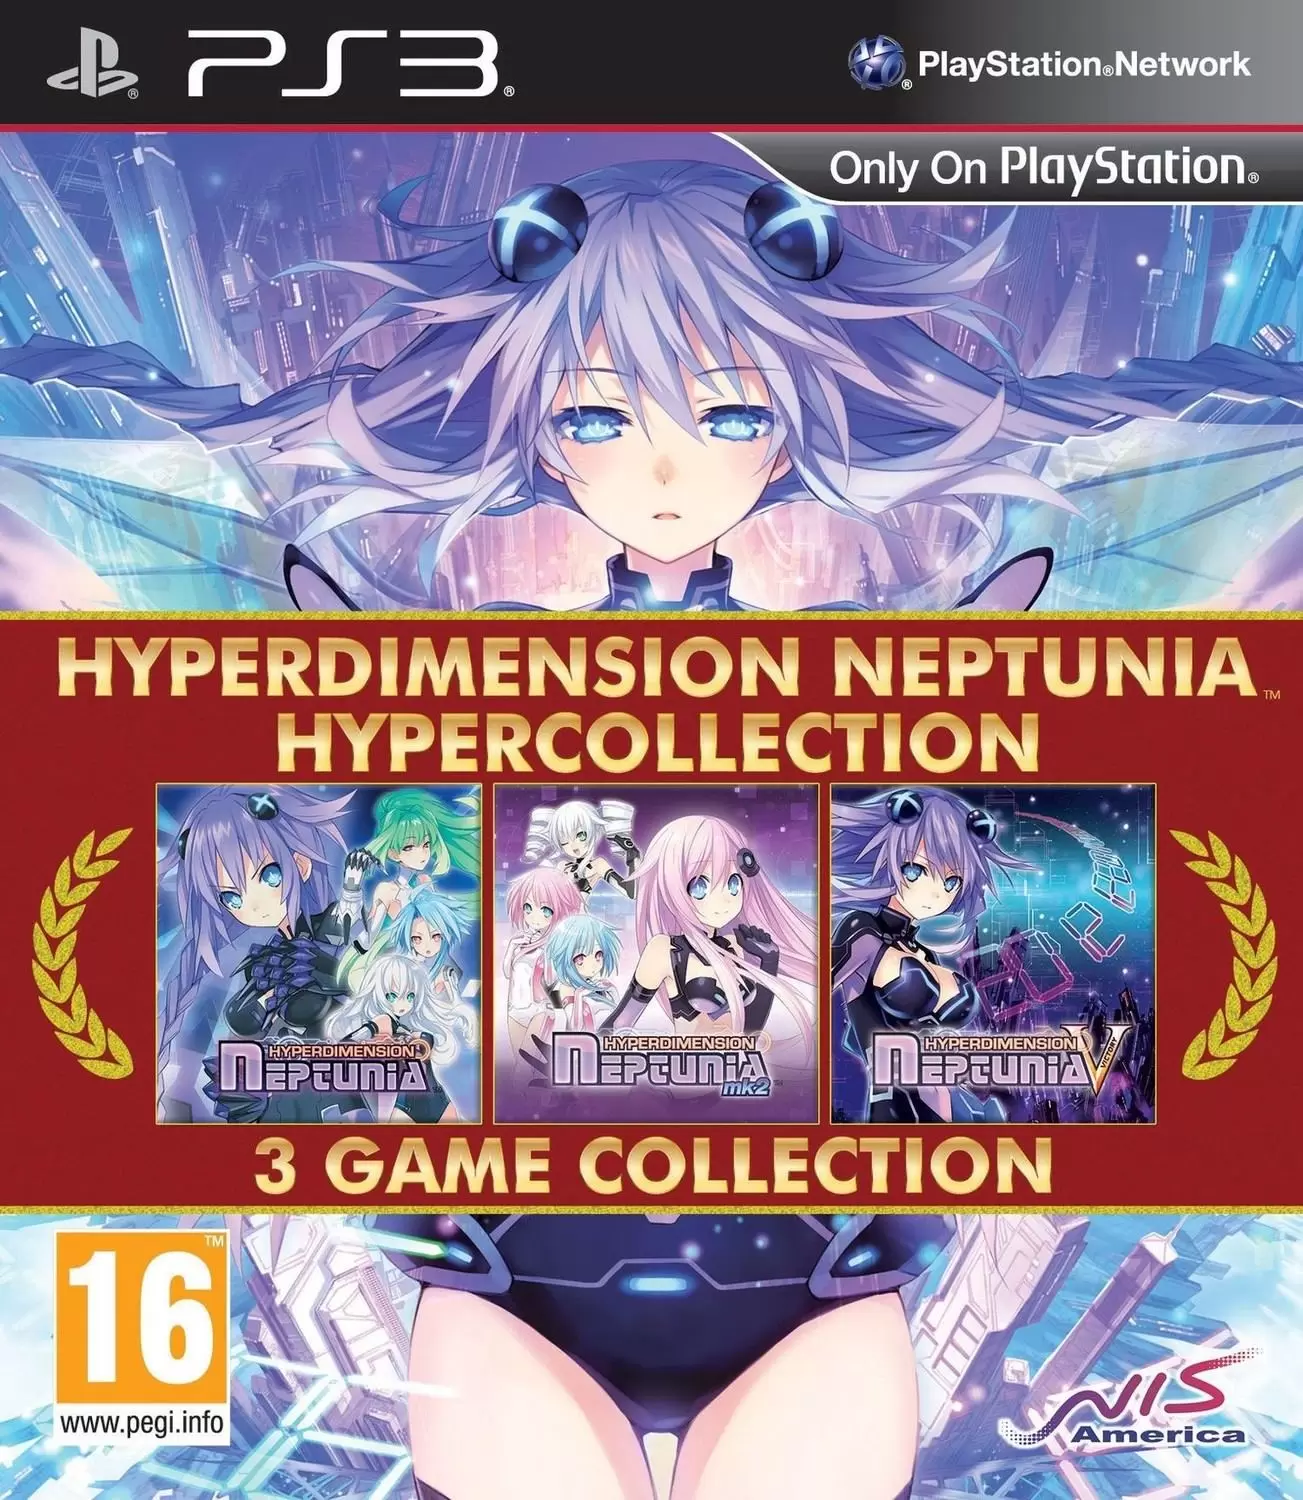 PS3 Games - Hyperdimension Neptunia Hypercollection